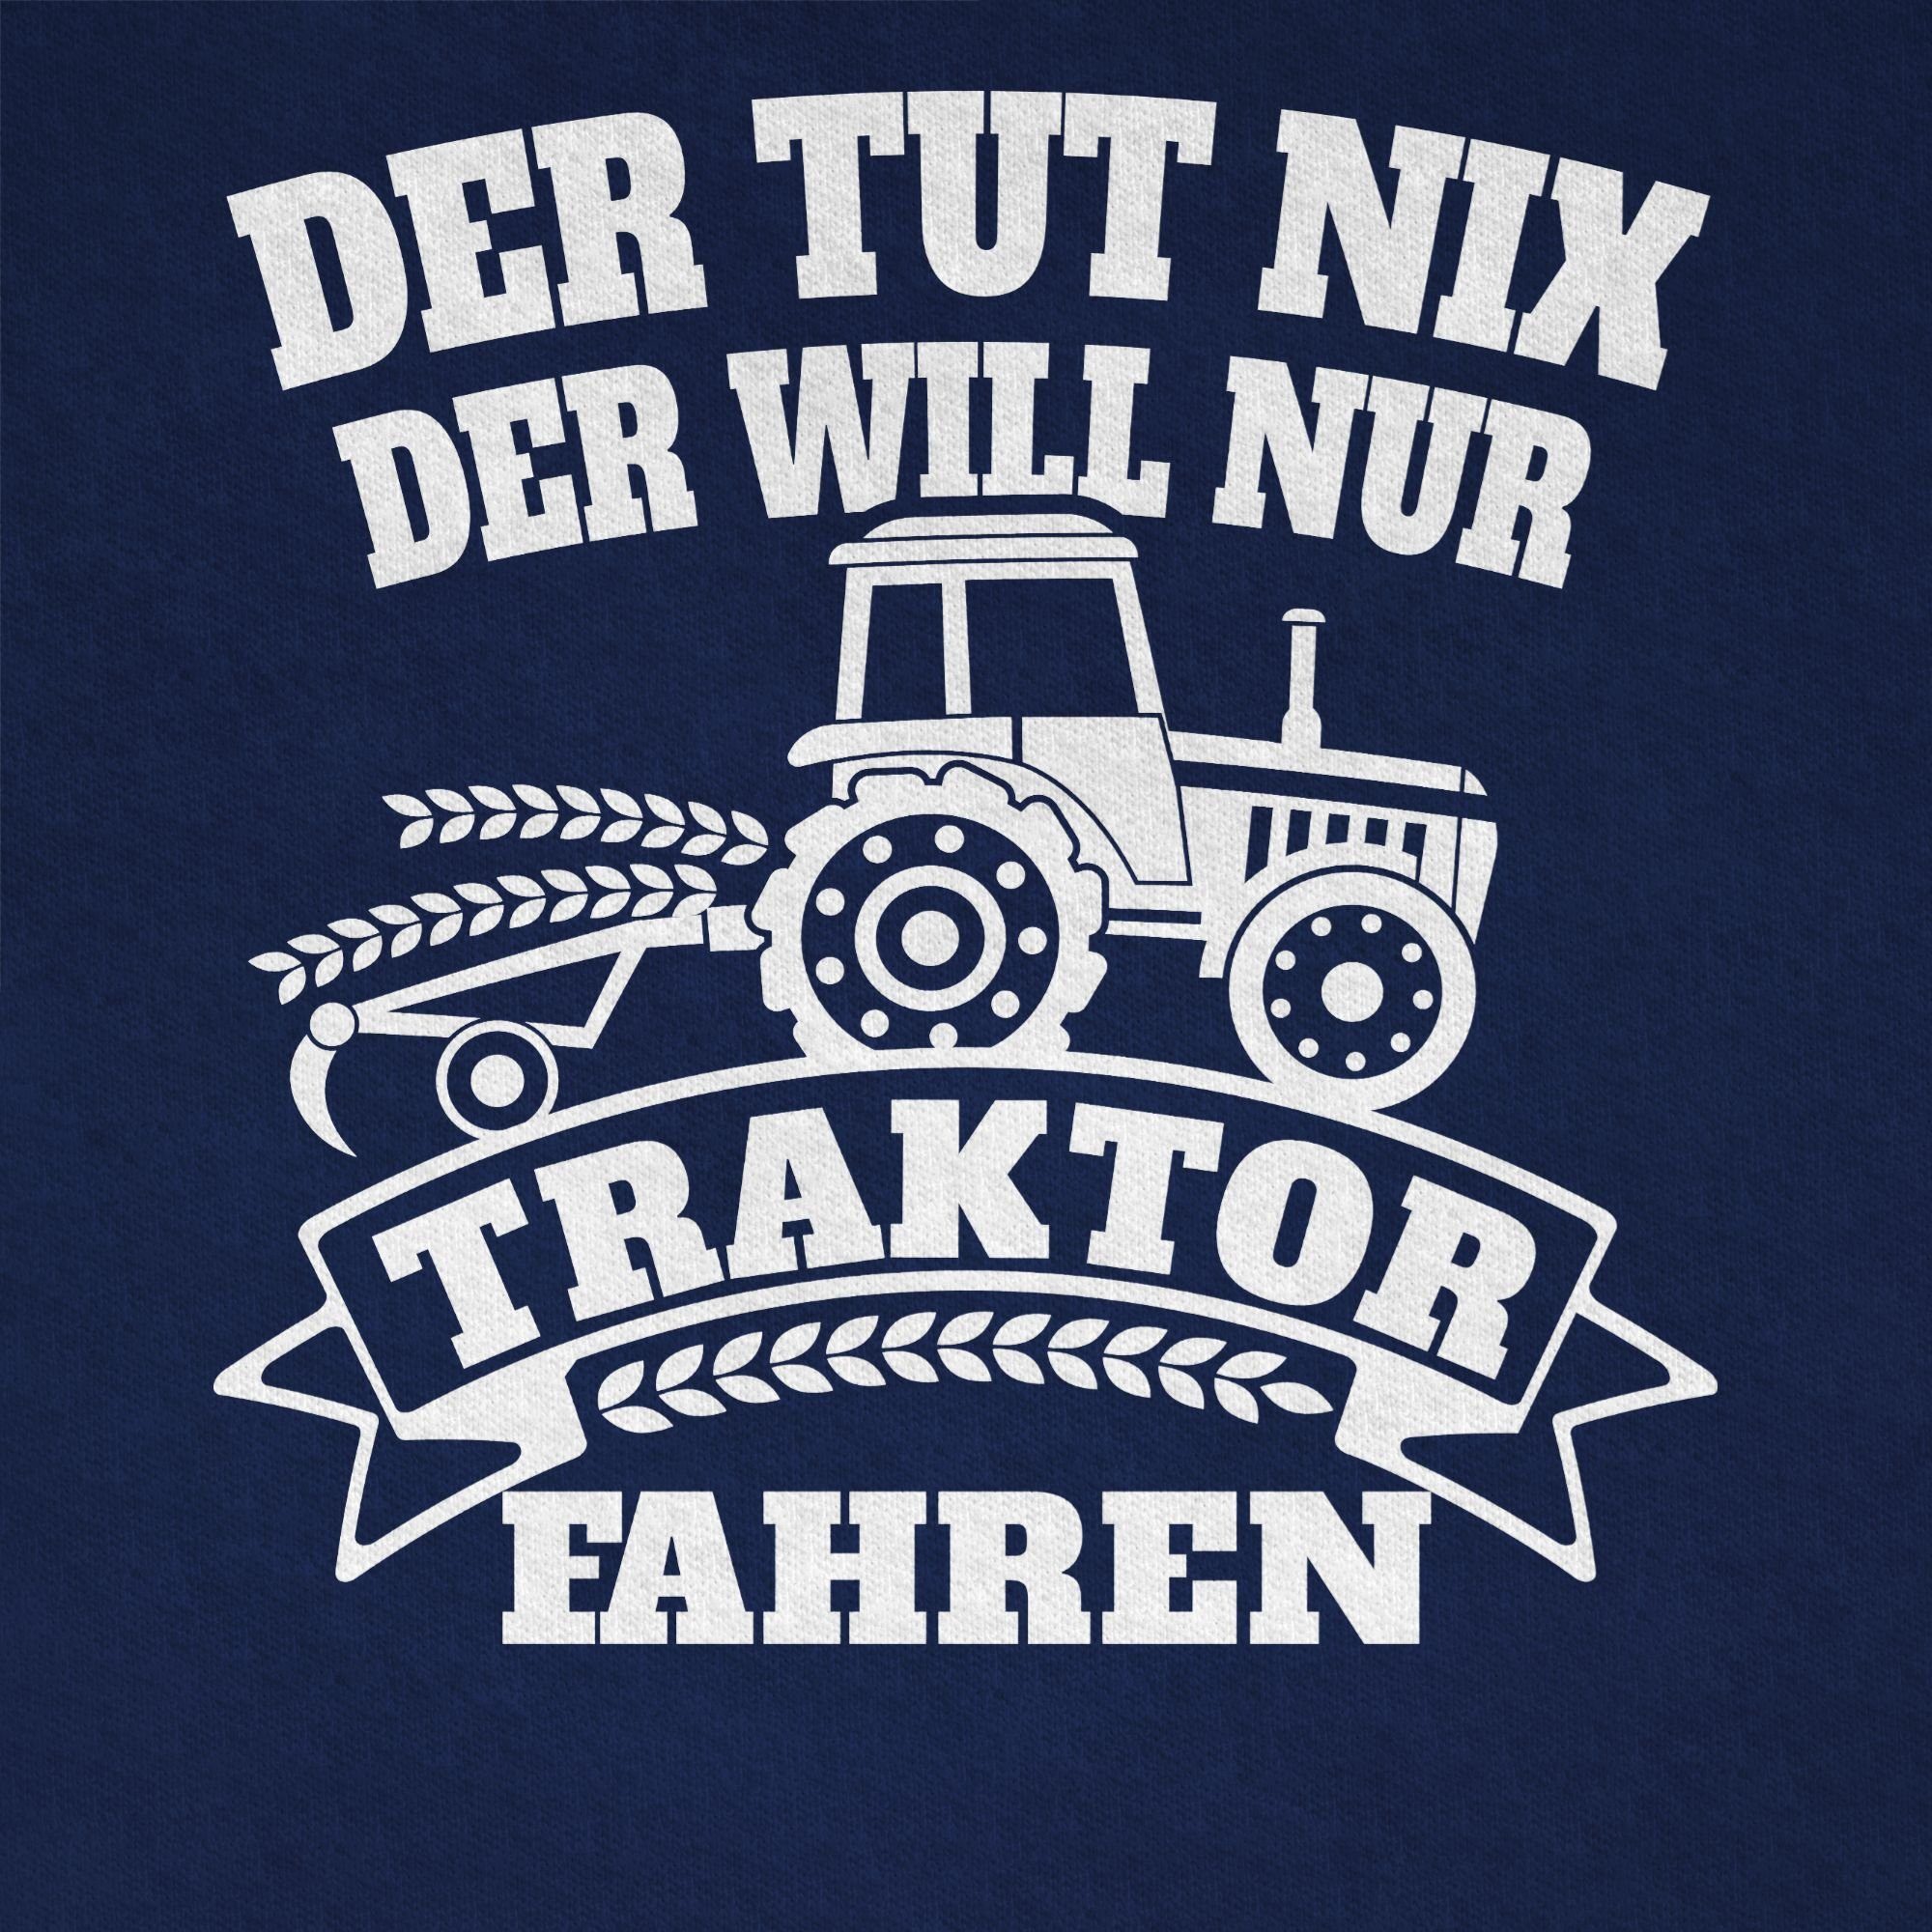 T-Shirt Der Traktor Dunkelblau Shirtracer nur Traktor nix fahren 3 will tut der